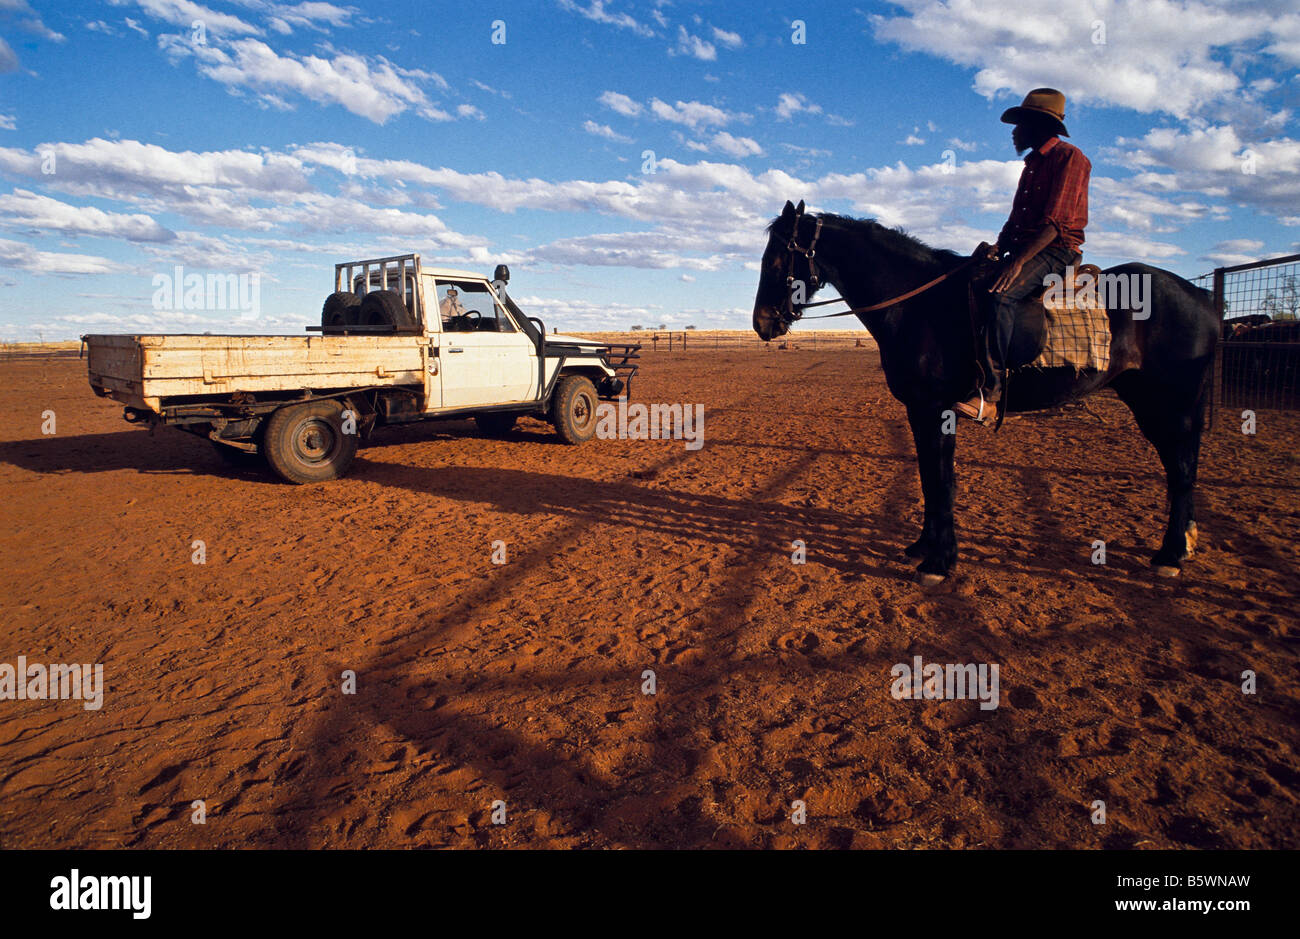 Aboriginal stockman, outback Australia Stock Photo